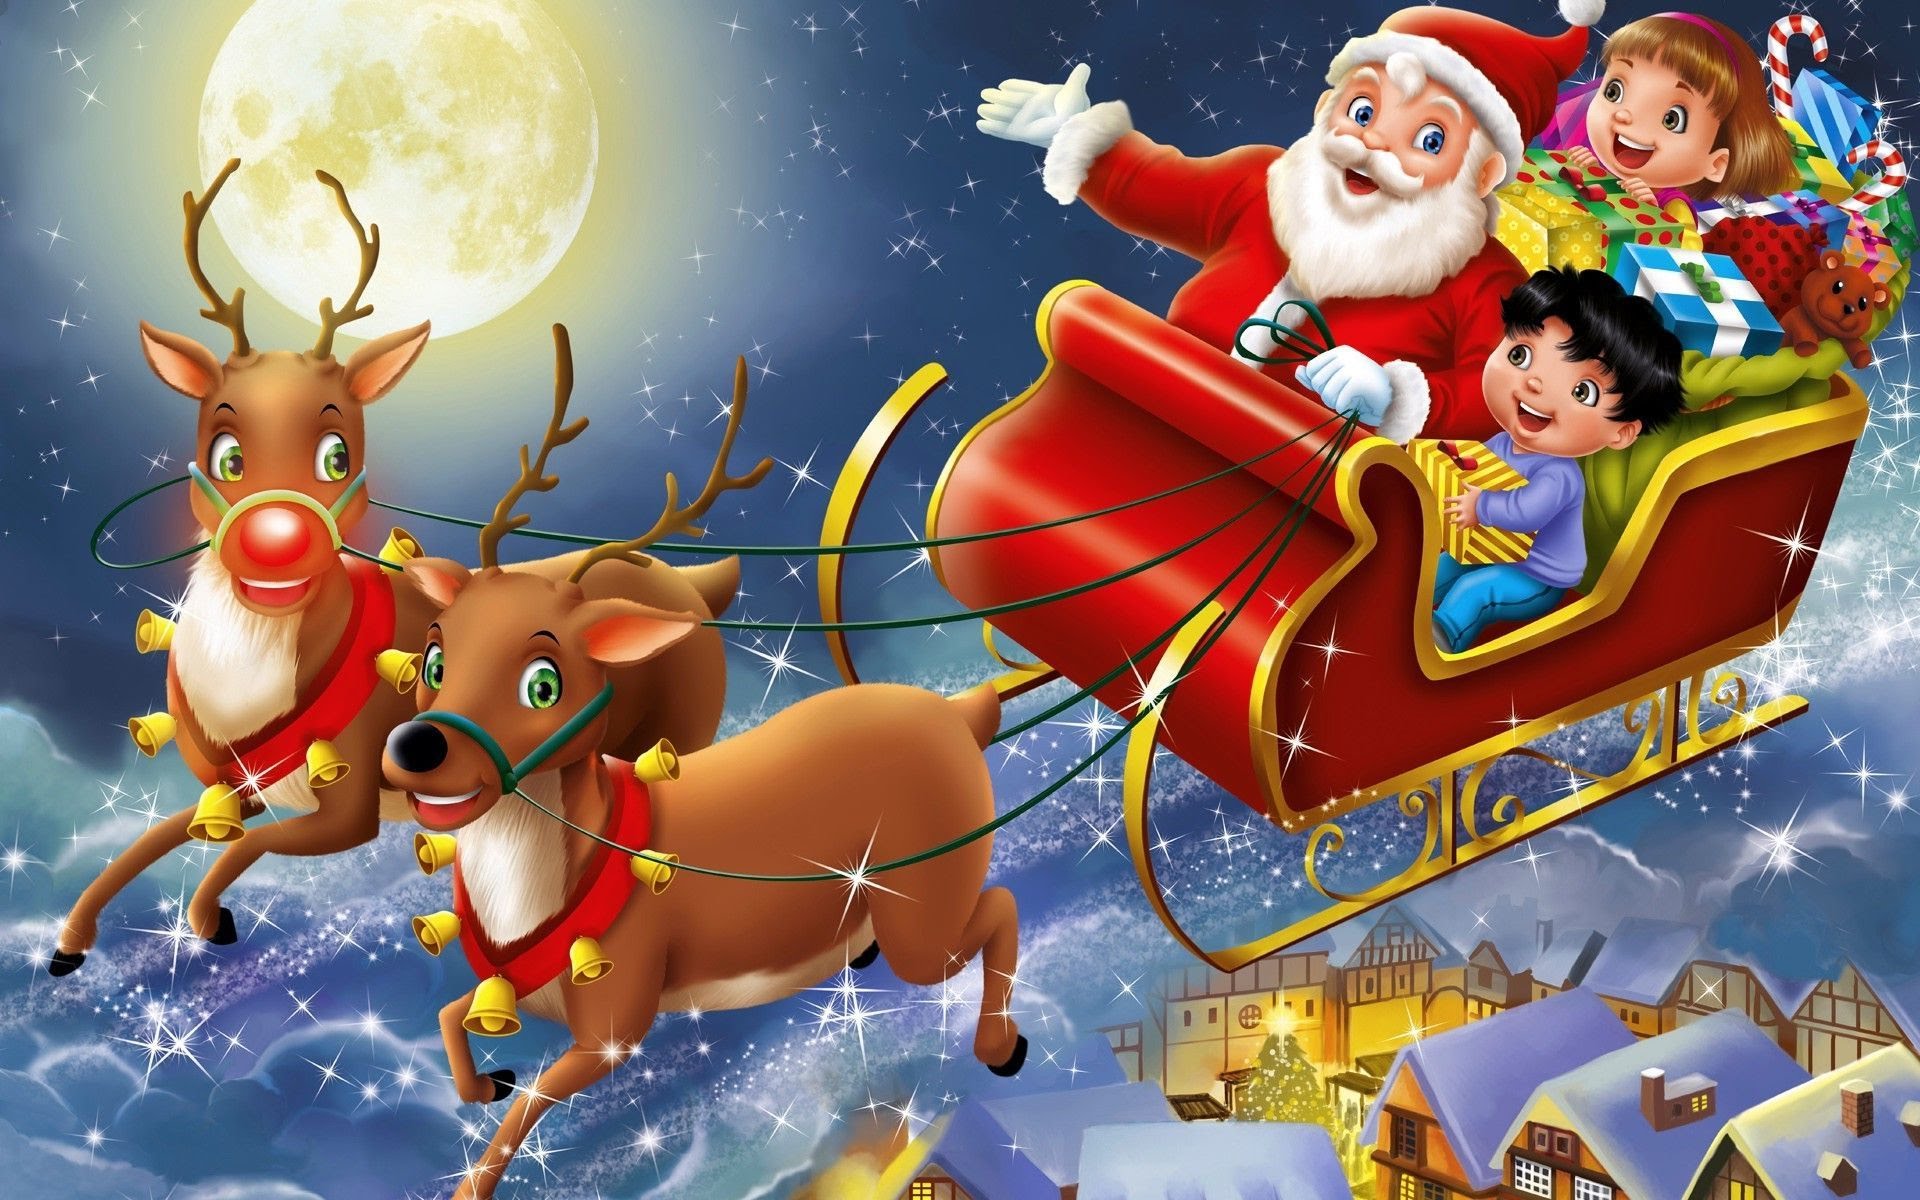 Ông già Noel: Bạn có muốn tìm hiểu về câu chuyện về ông già Noel vui nhộn và thần thoại của món đồ chơi Giáng sinh yêu thích của mọi người? Hãy xem ảnh liên quan để khám phá thêm về ông già Noel và những điều thú vị về hình ảnh đặc trưng của ông.